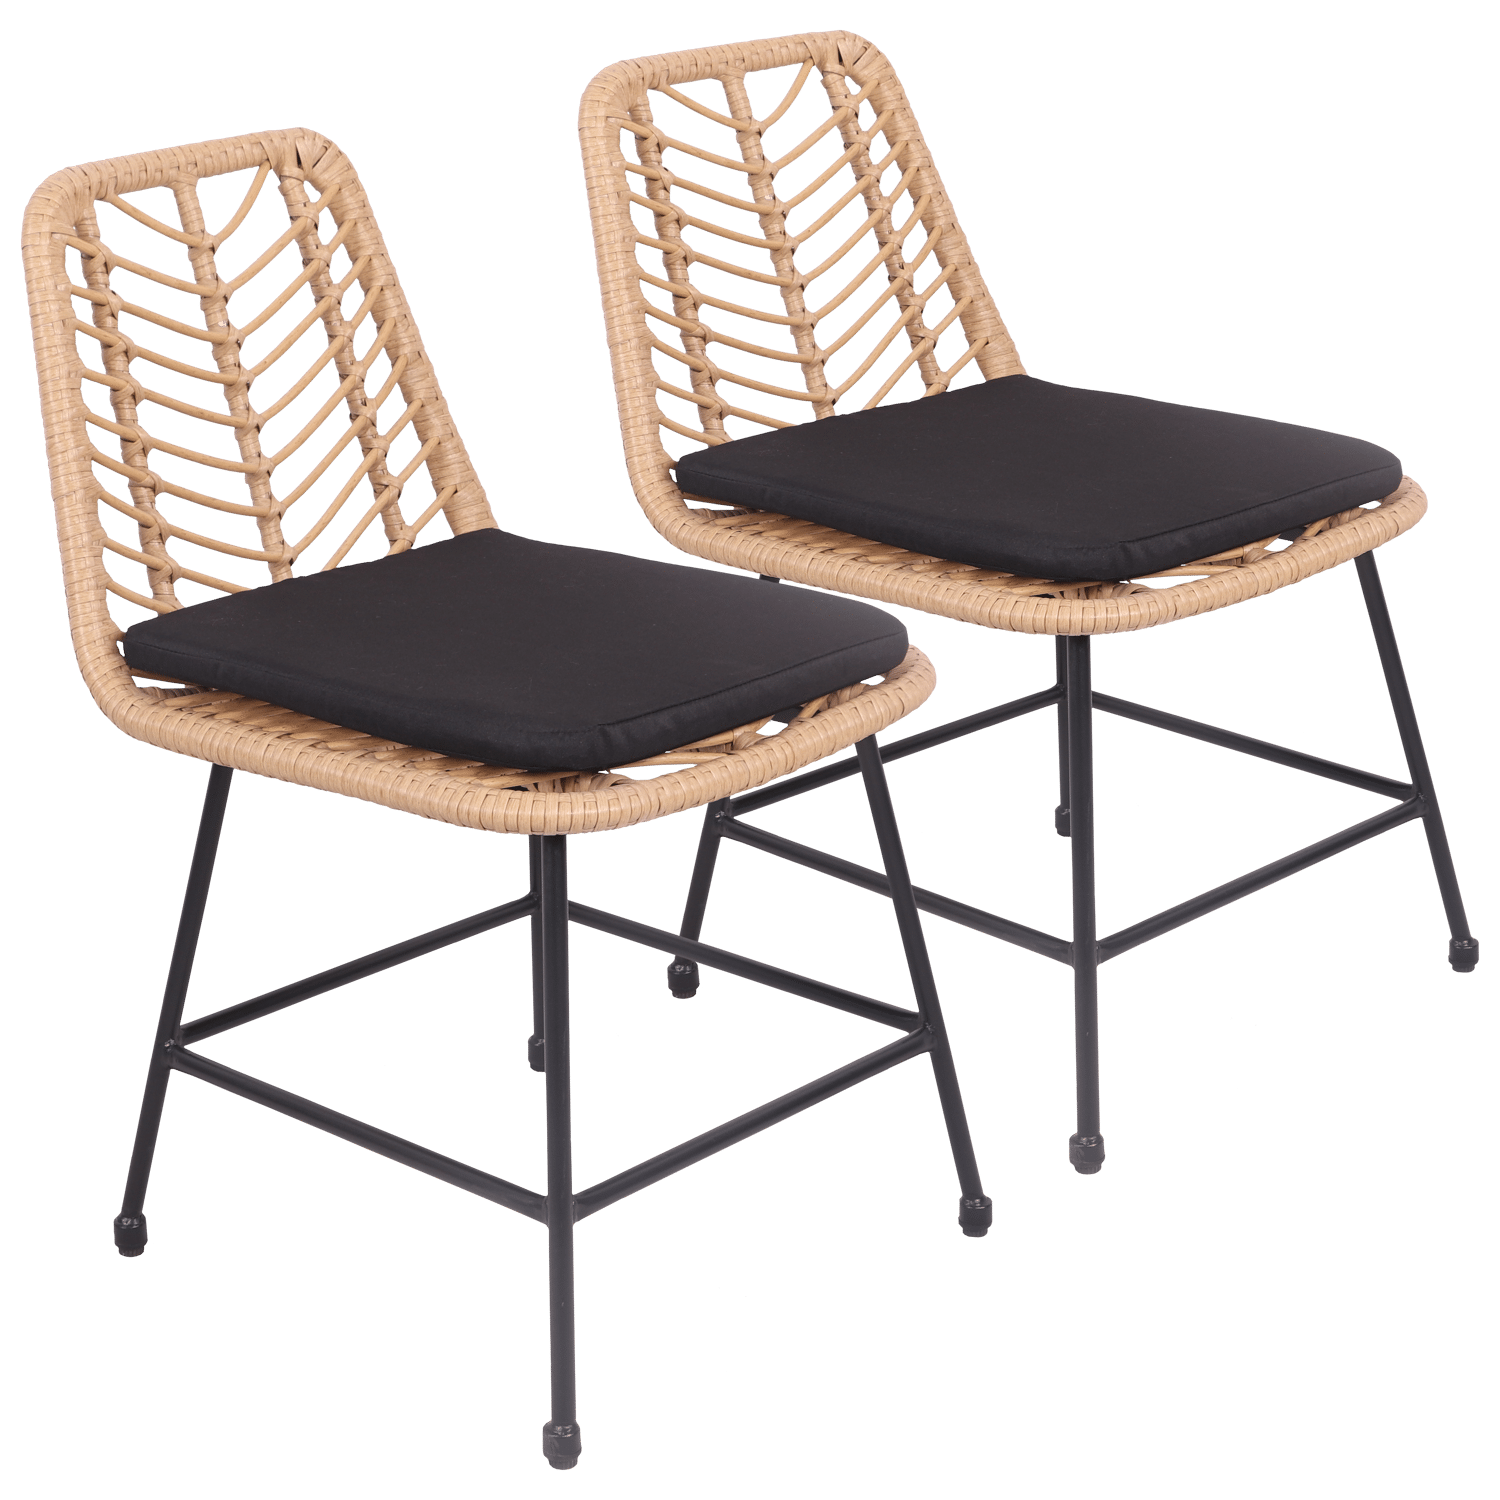 Lot de 2 chaises en rotin synthétique avec coussins OKA